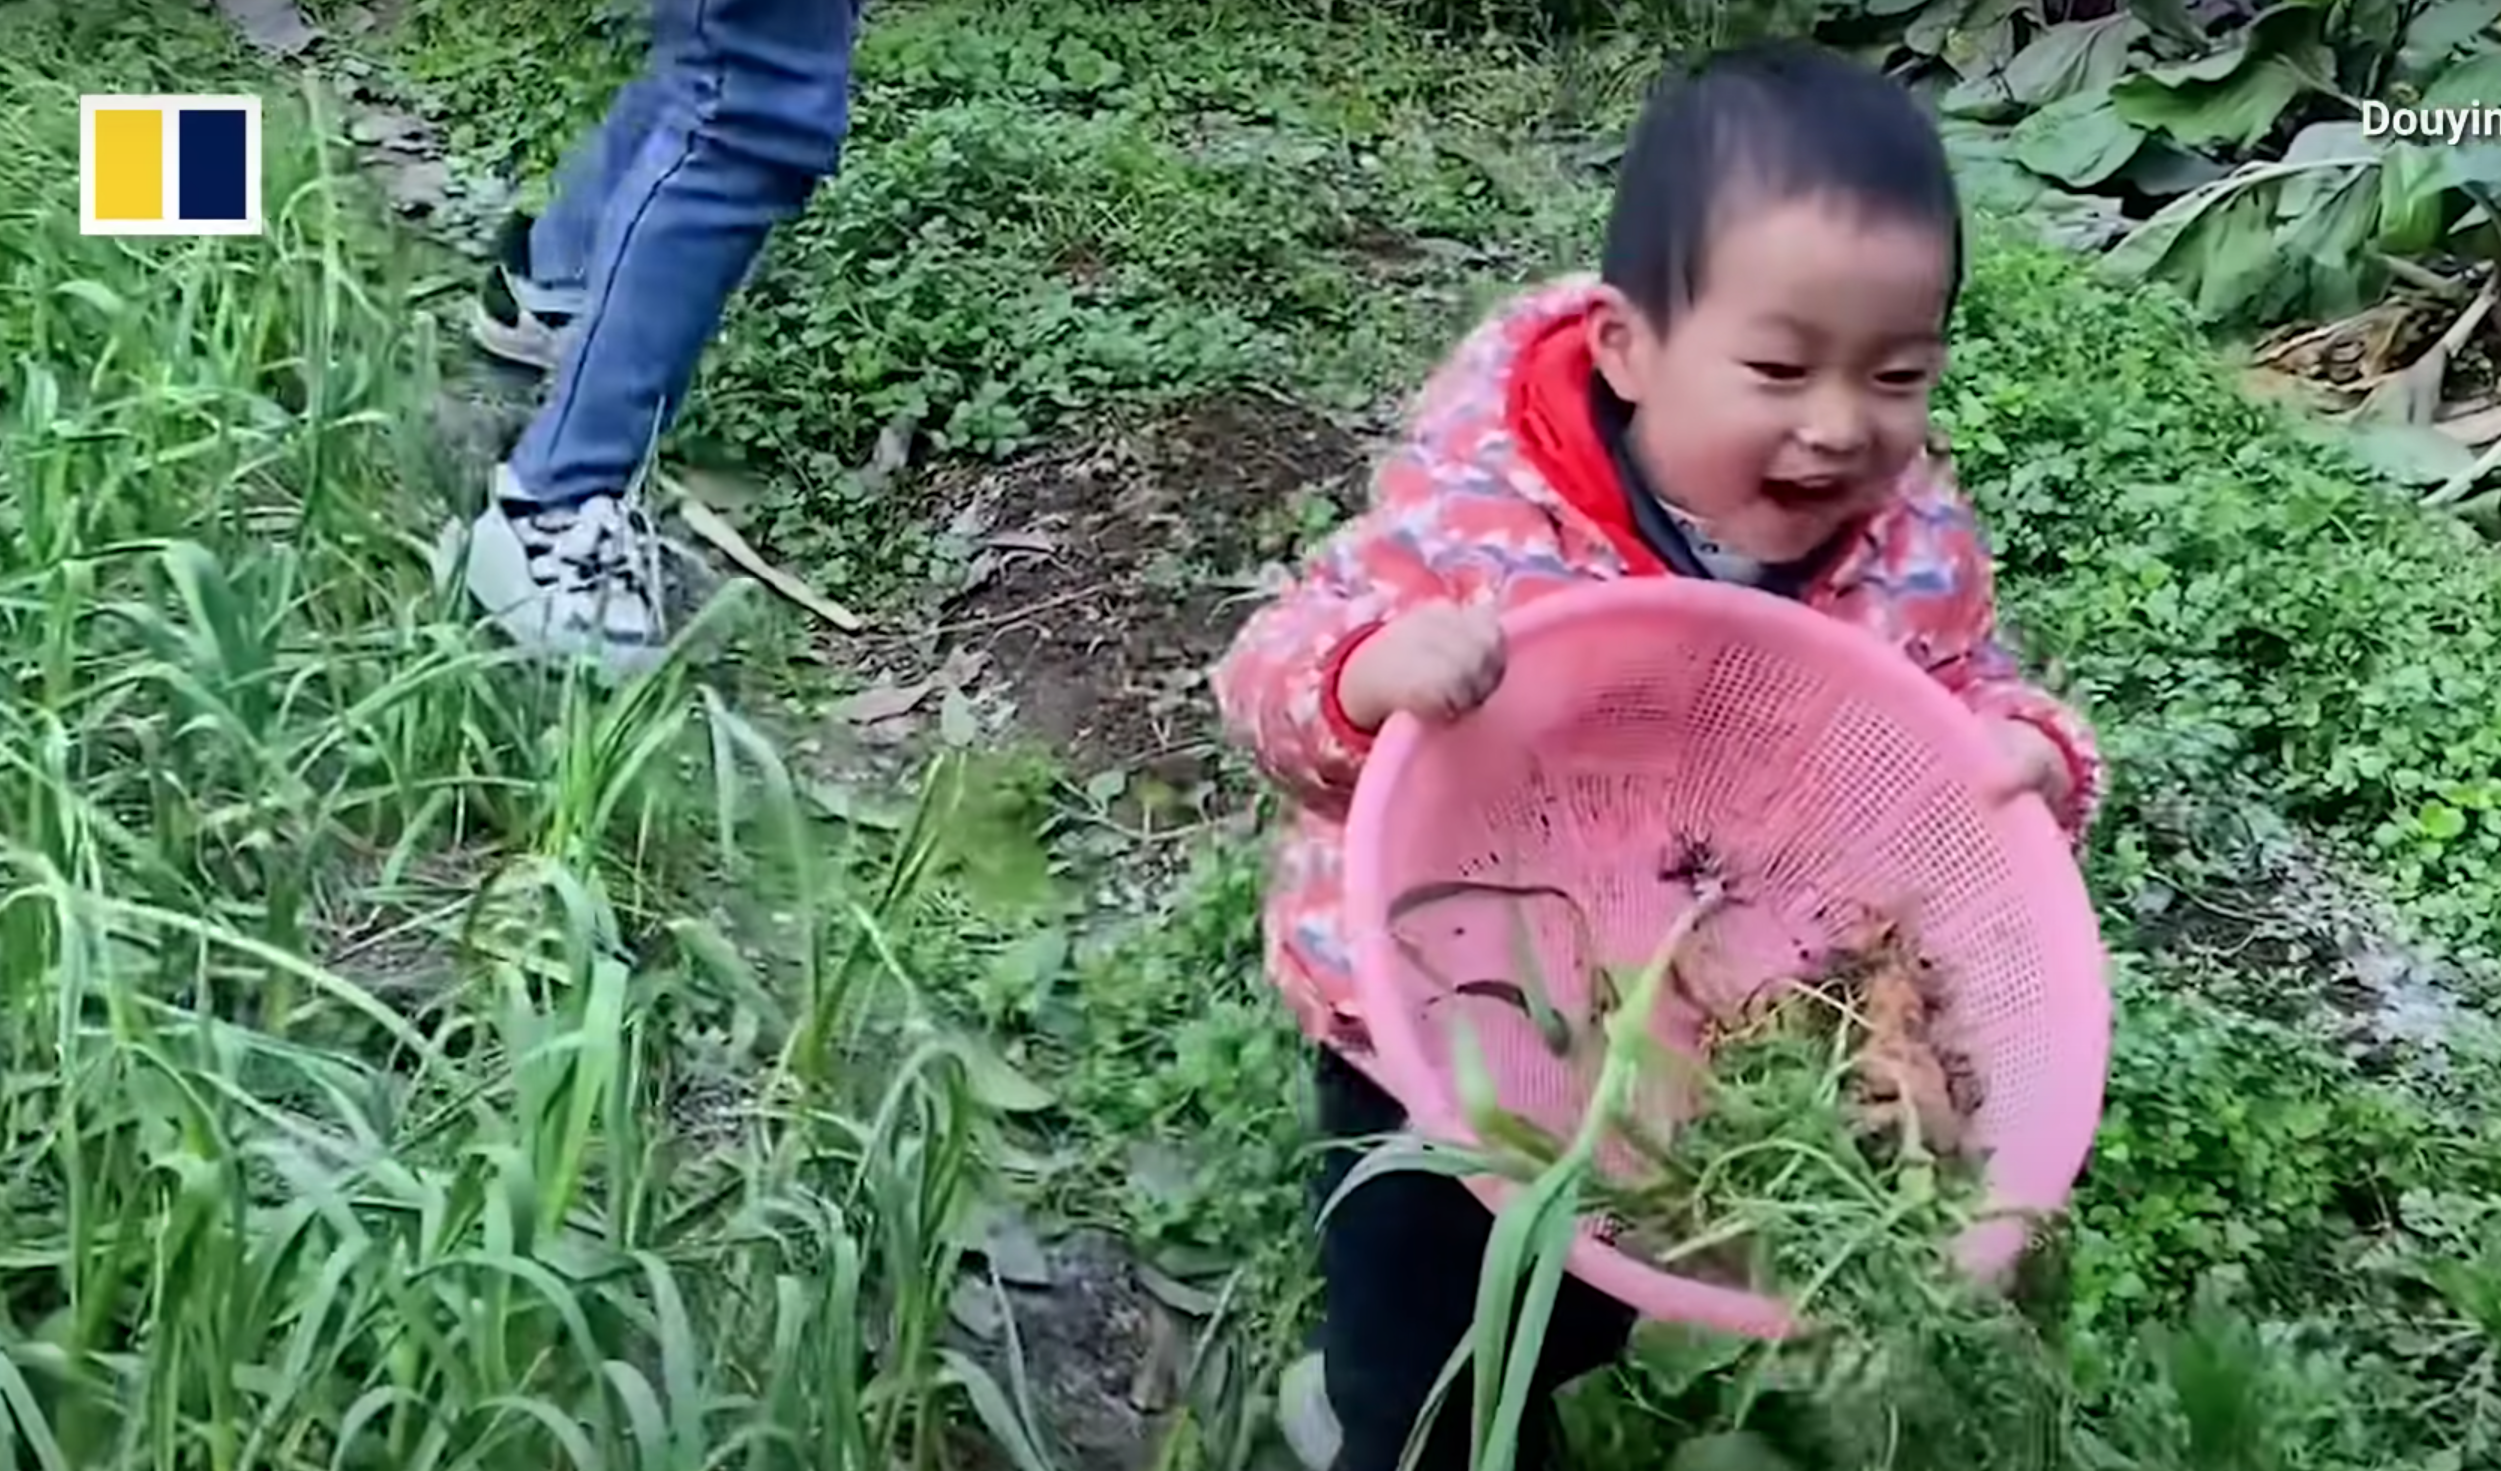 Pomelo hilft seiner Mama beim Aussuchen von Gemüse. | Quelle: Youtube.com/South China Morning Post